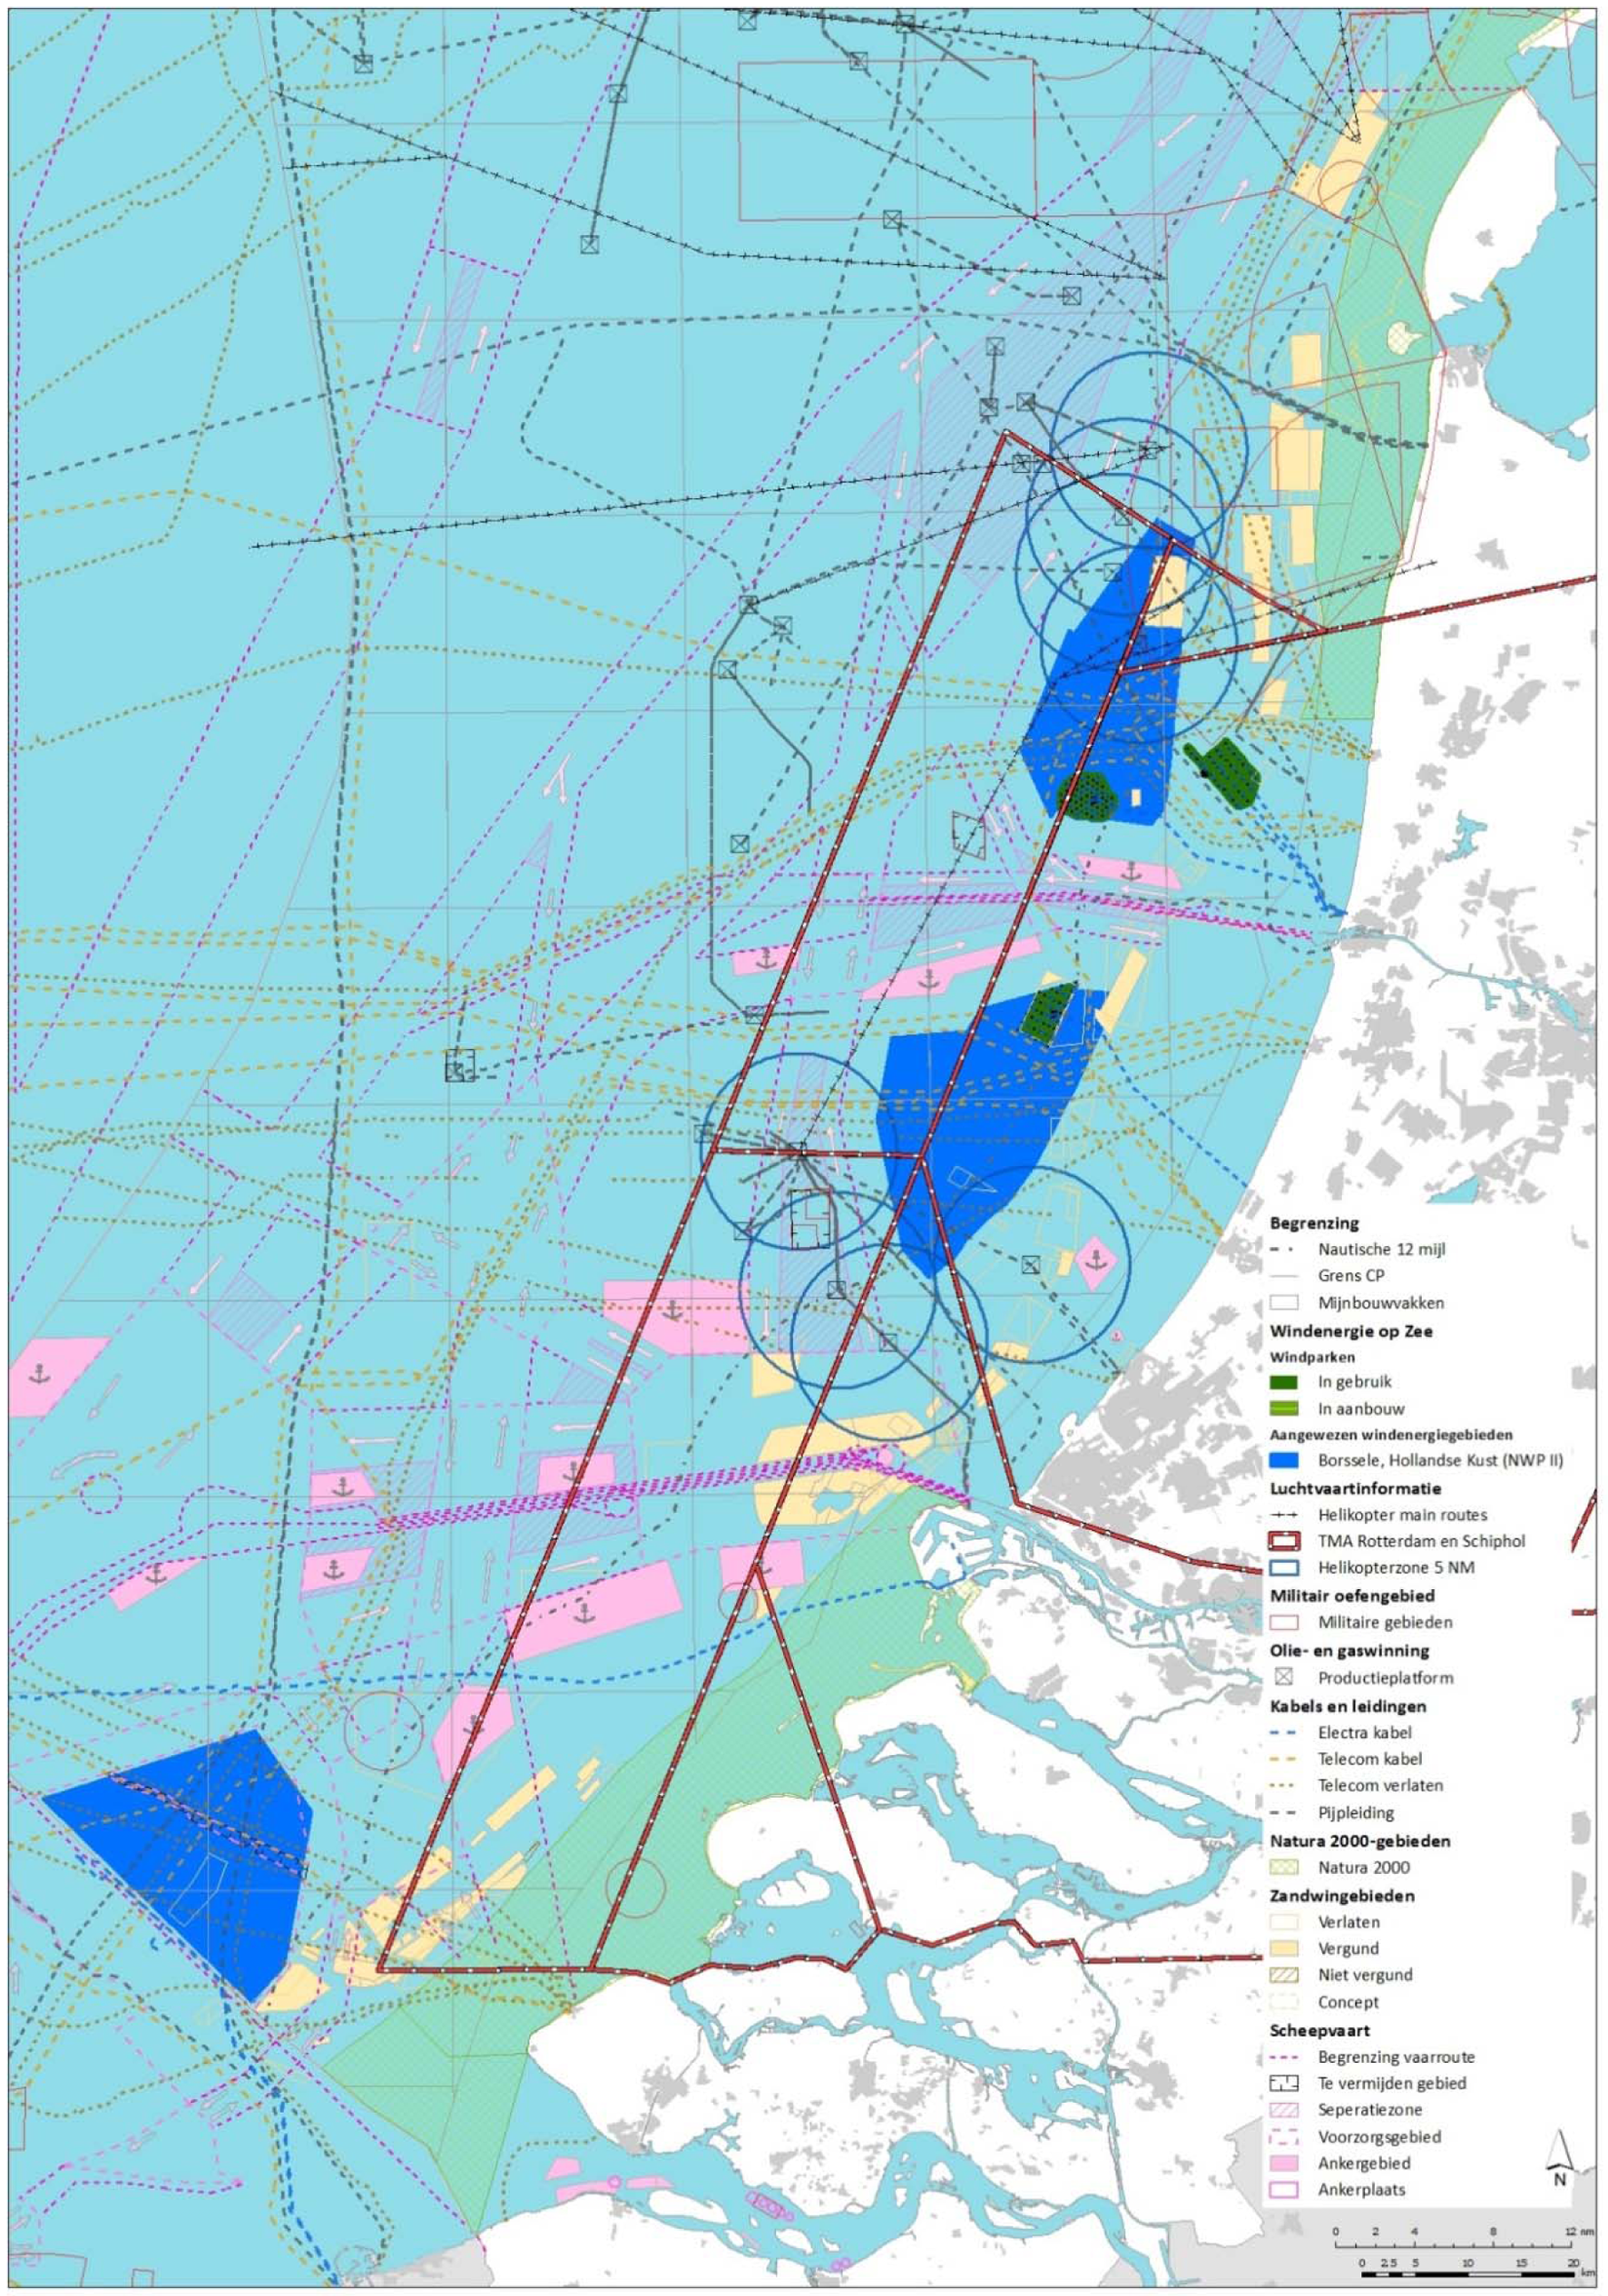 Figuur 2 Windenergiegebied Hollandse Kust (zuid en noord) met gebruiksfuncties in de directe omgeving